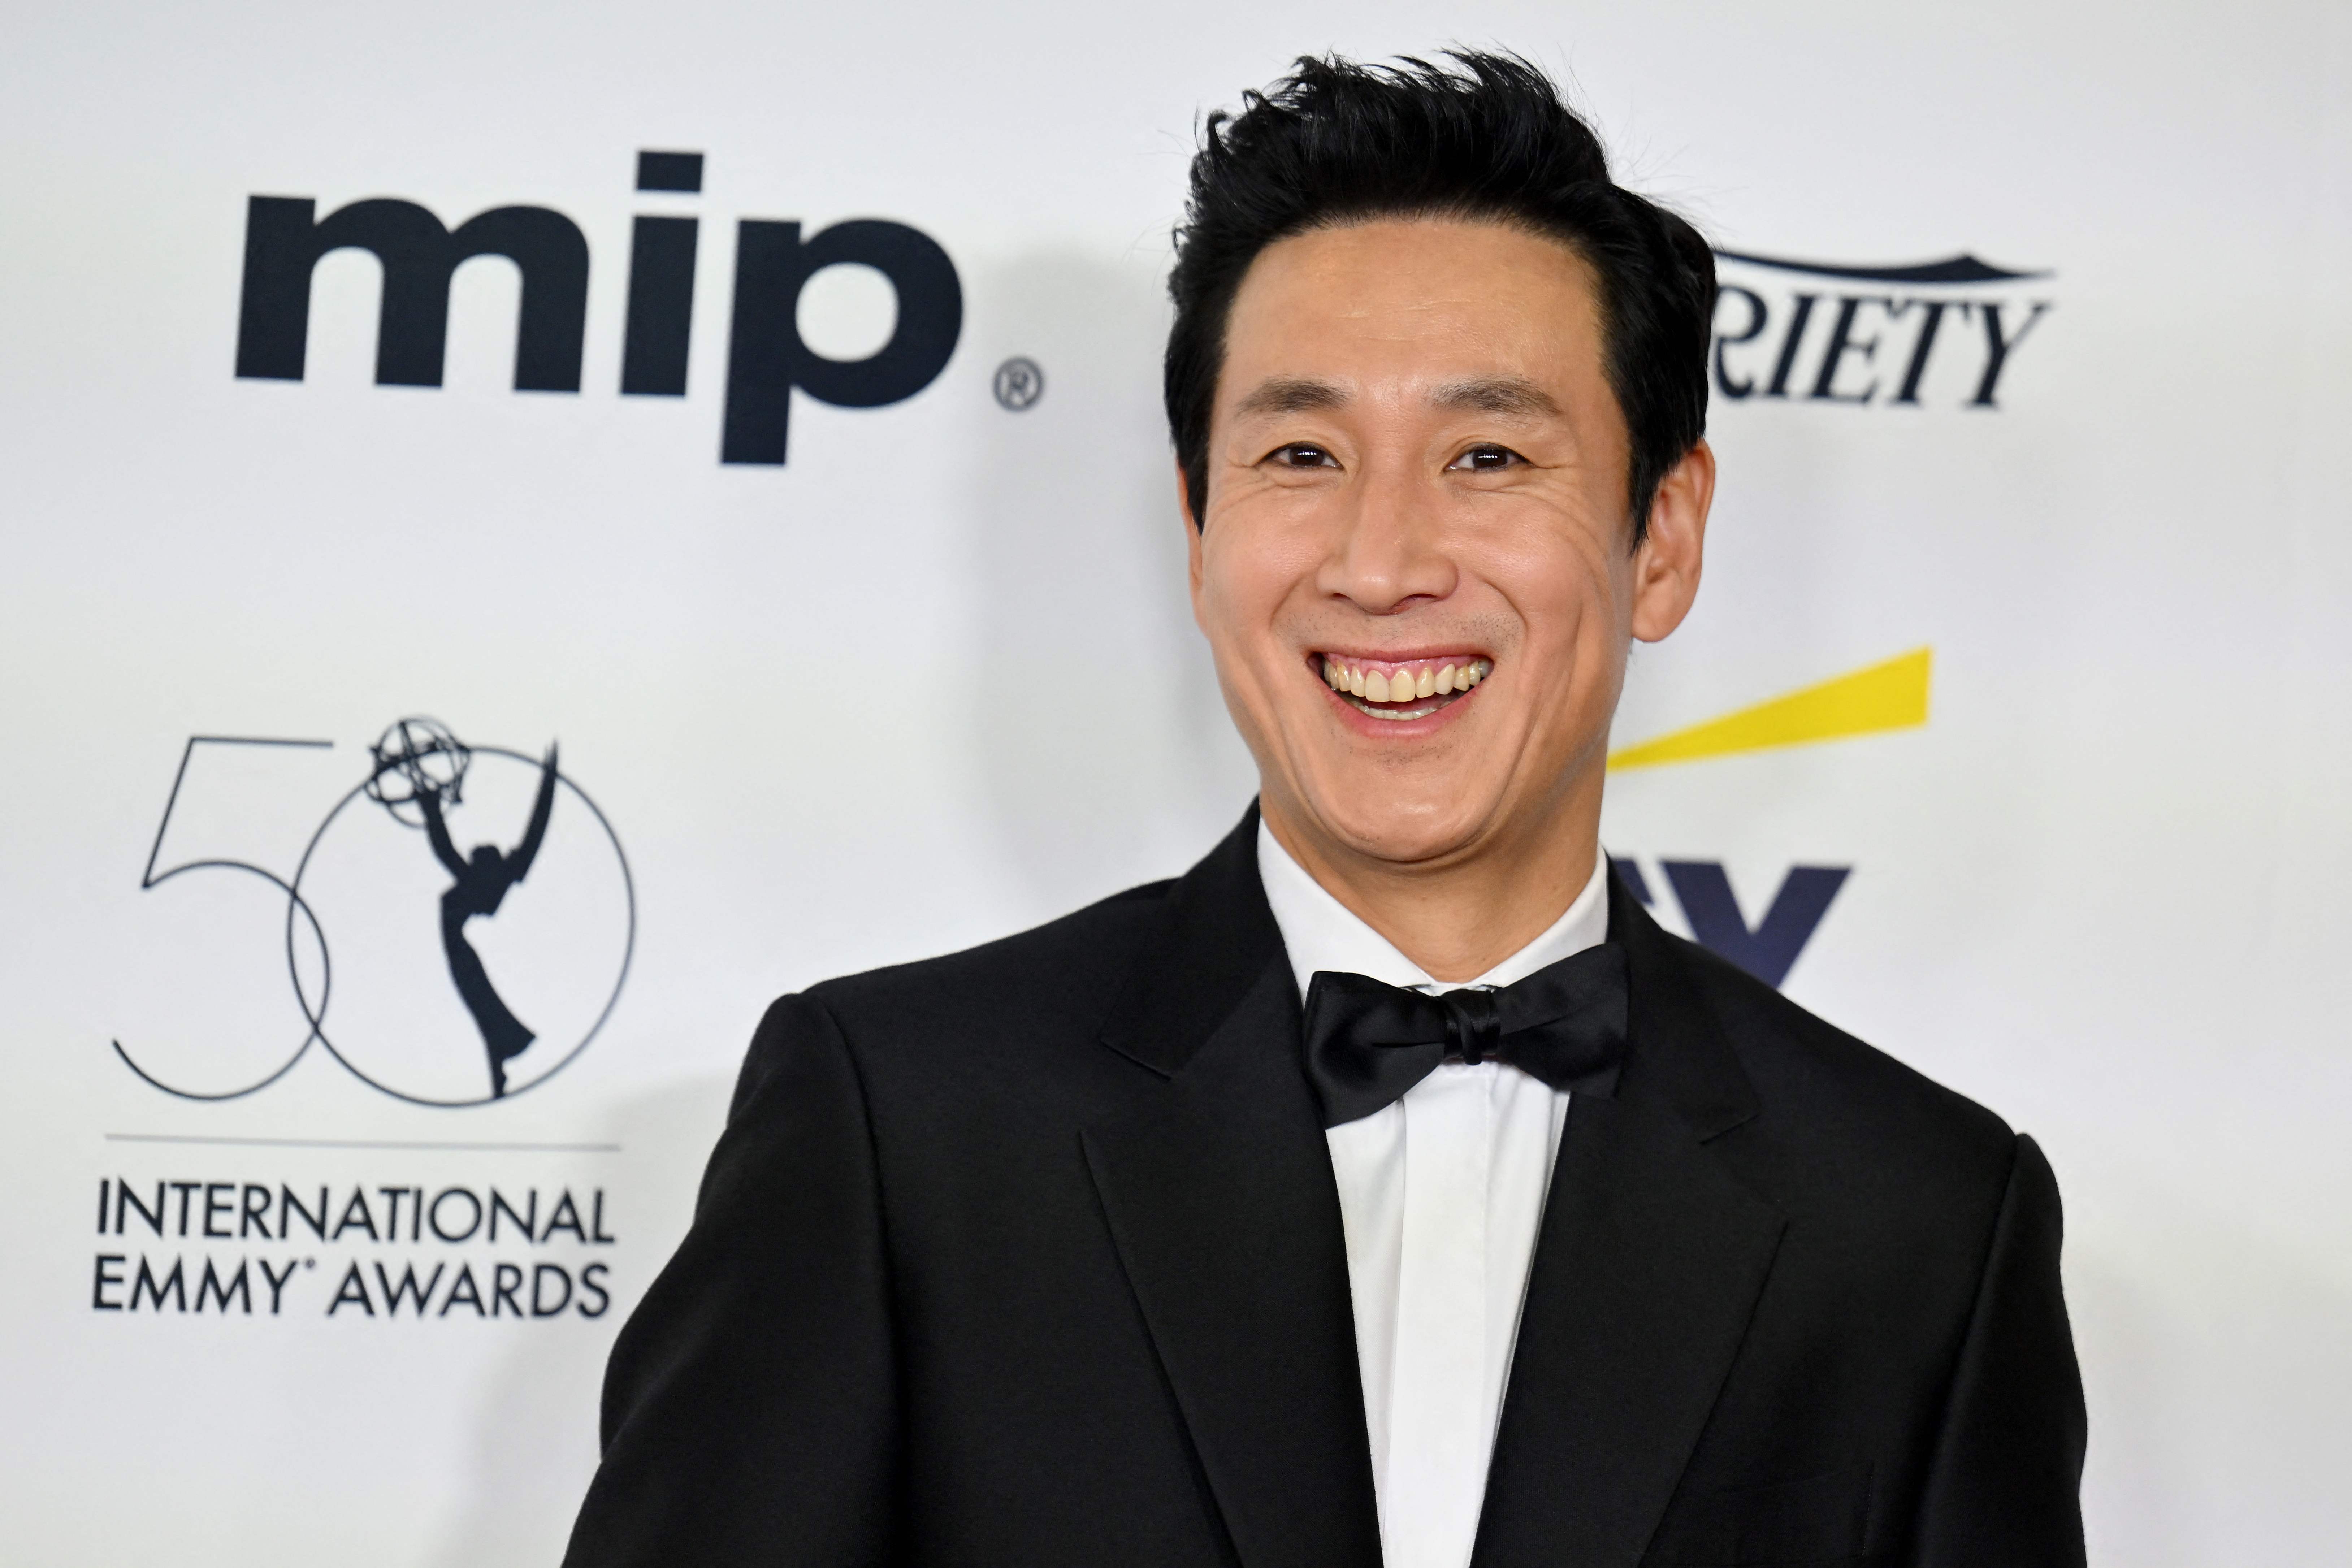 El actor surcoreano Lee Sun-kyun, más conocido por su papel en la película ganadora del Oscar "Parásito", fue encontrado muerto en un aparente suicidio, informó la agencia de noticias Yonhap el 24 de diciembre de 2023. (Foto Prensa Libre: ANGELA WEISS / AFP)